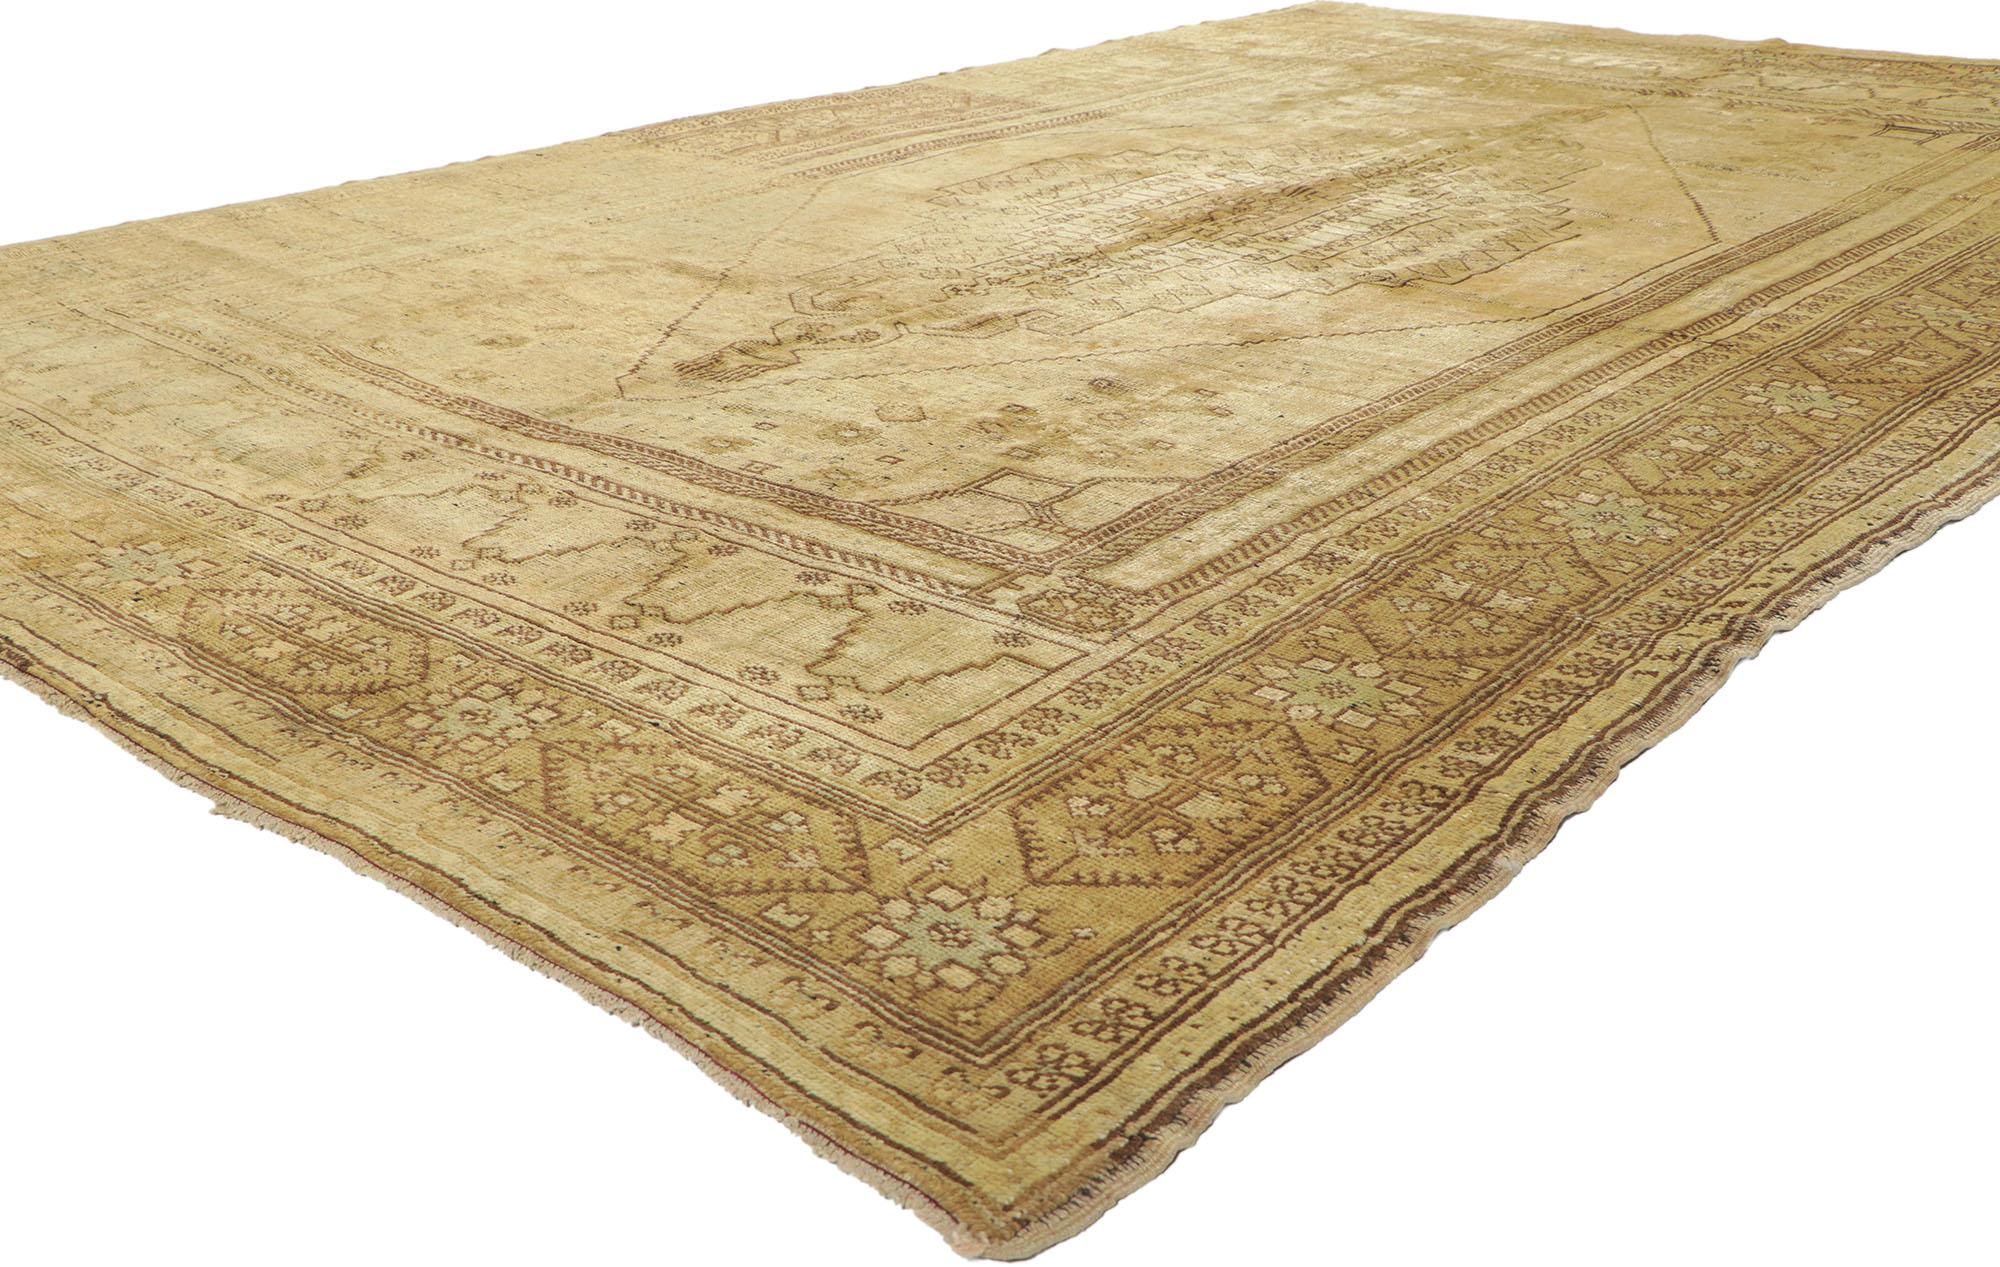 50503, alter türkischer Oushak-Teppich mit warmen Erdtönen. Dieser handgeknüpfte türkische Oushak-Teppich aus Wolle zeigt ein Rautenmedaillon mit Kammanhängern an beiden Enden, das in einem sechseckigen, abgestuften Ausschnittfeld schwebt. Jede